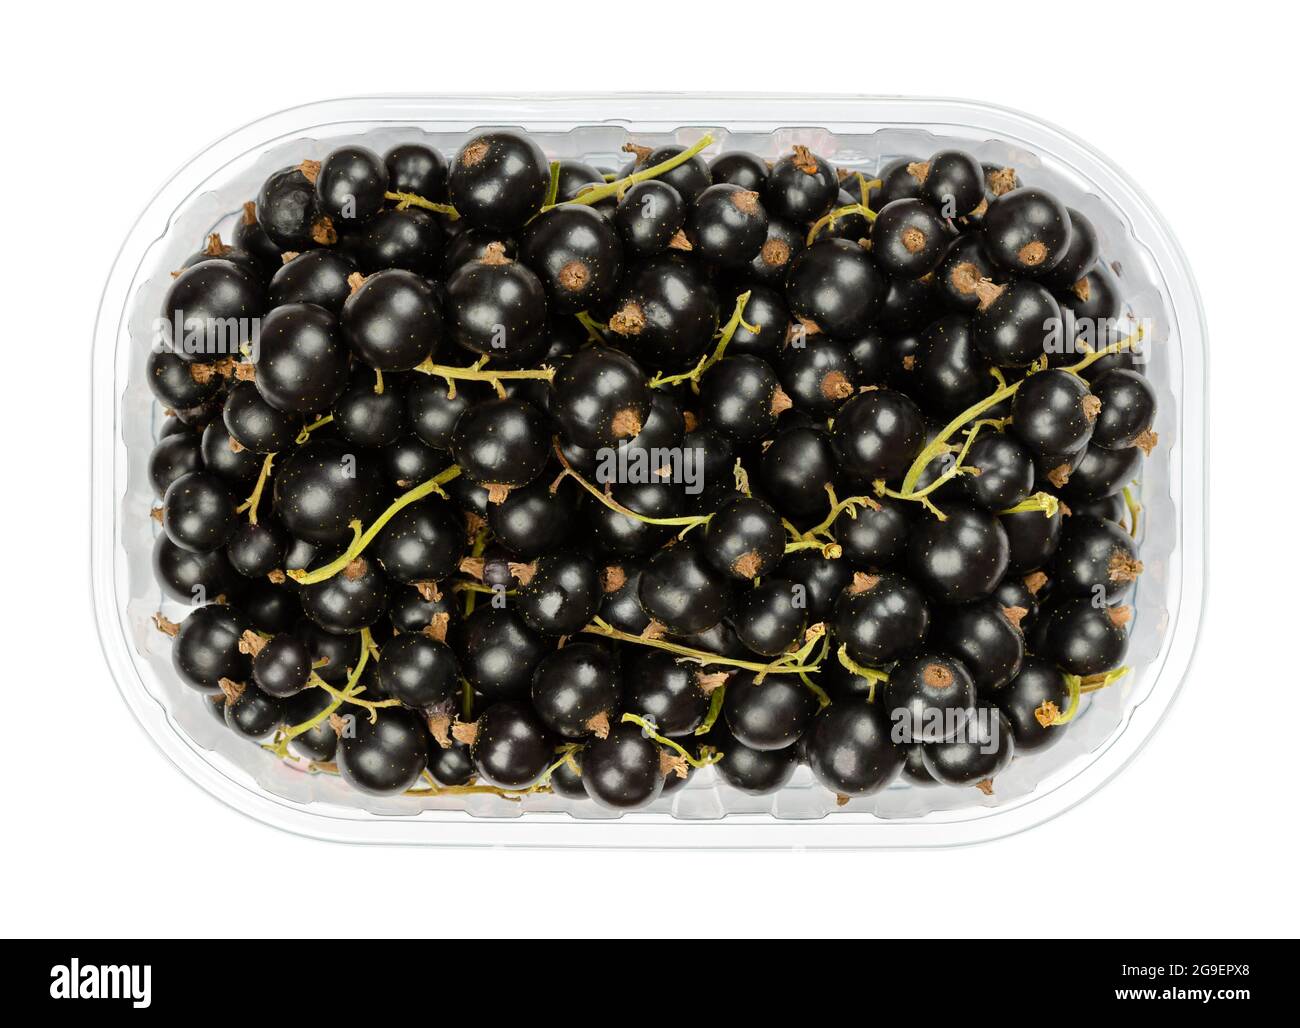 Schwarze Johannisbeeren, in einem Plastikbehälter. Frische reife schwarze Johannisbeeren, bekannt als Cassis, kugelförmige essbare Früchte von Ribes nigrum. Stockfoto